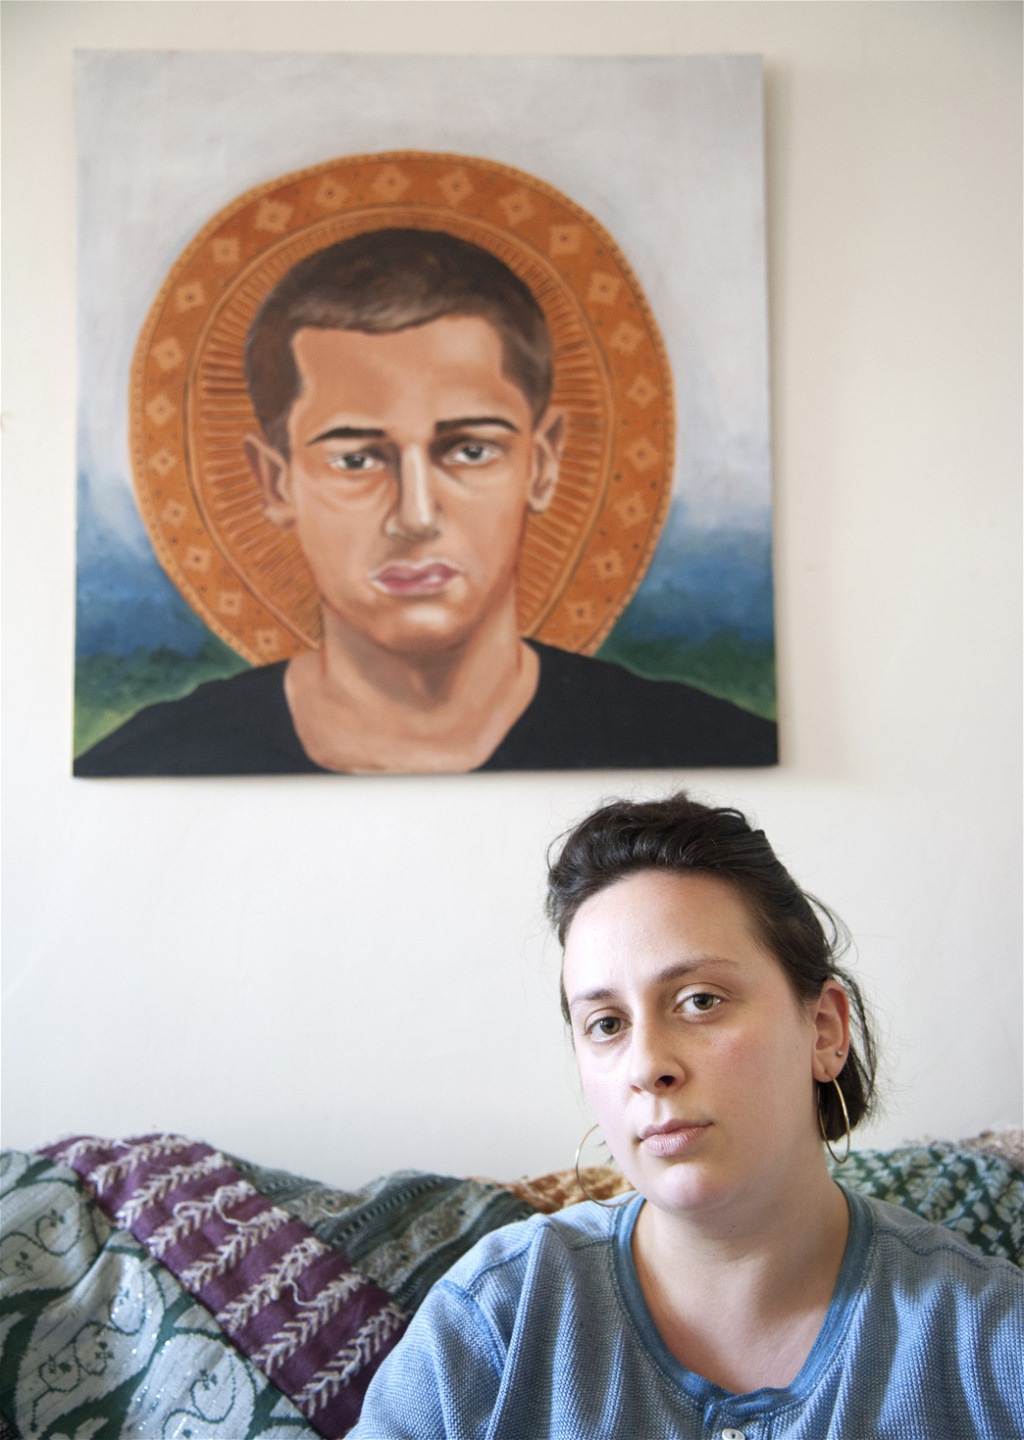 Samantha McGeowan under ett porträtt av brodern Jeremy som riskerar ett 25-årigt fängelsestraff
efter att ha skadat en kamrat i en olycka med ett skjutvapen under inflytande av depression
och medicinmissbruk. Hon besöker honom en gång i veckan i häktet där han suttit i två år.